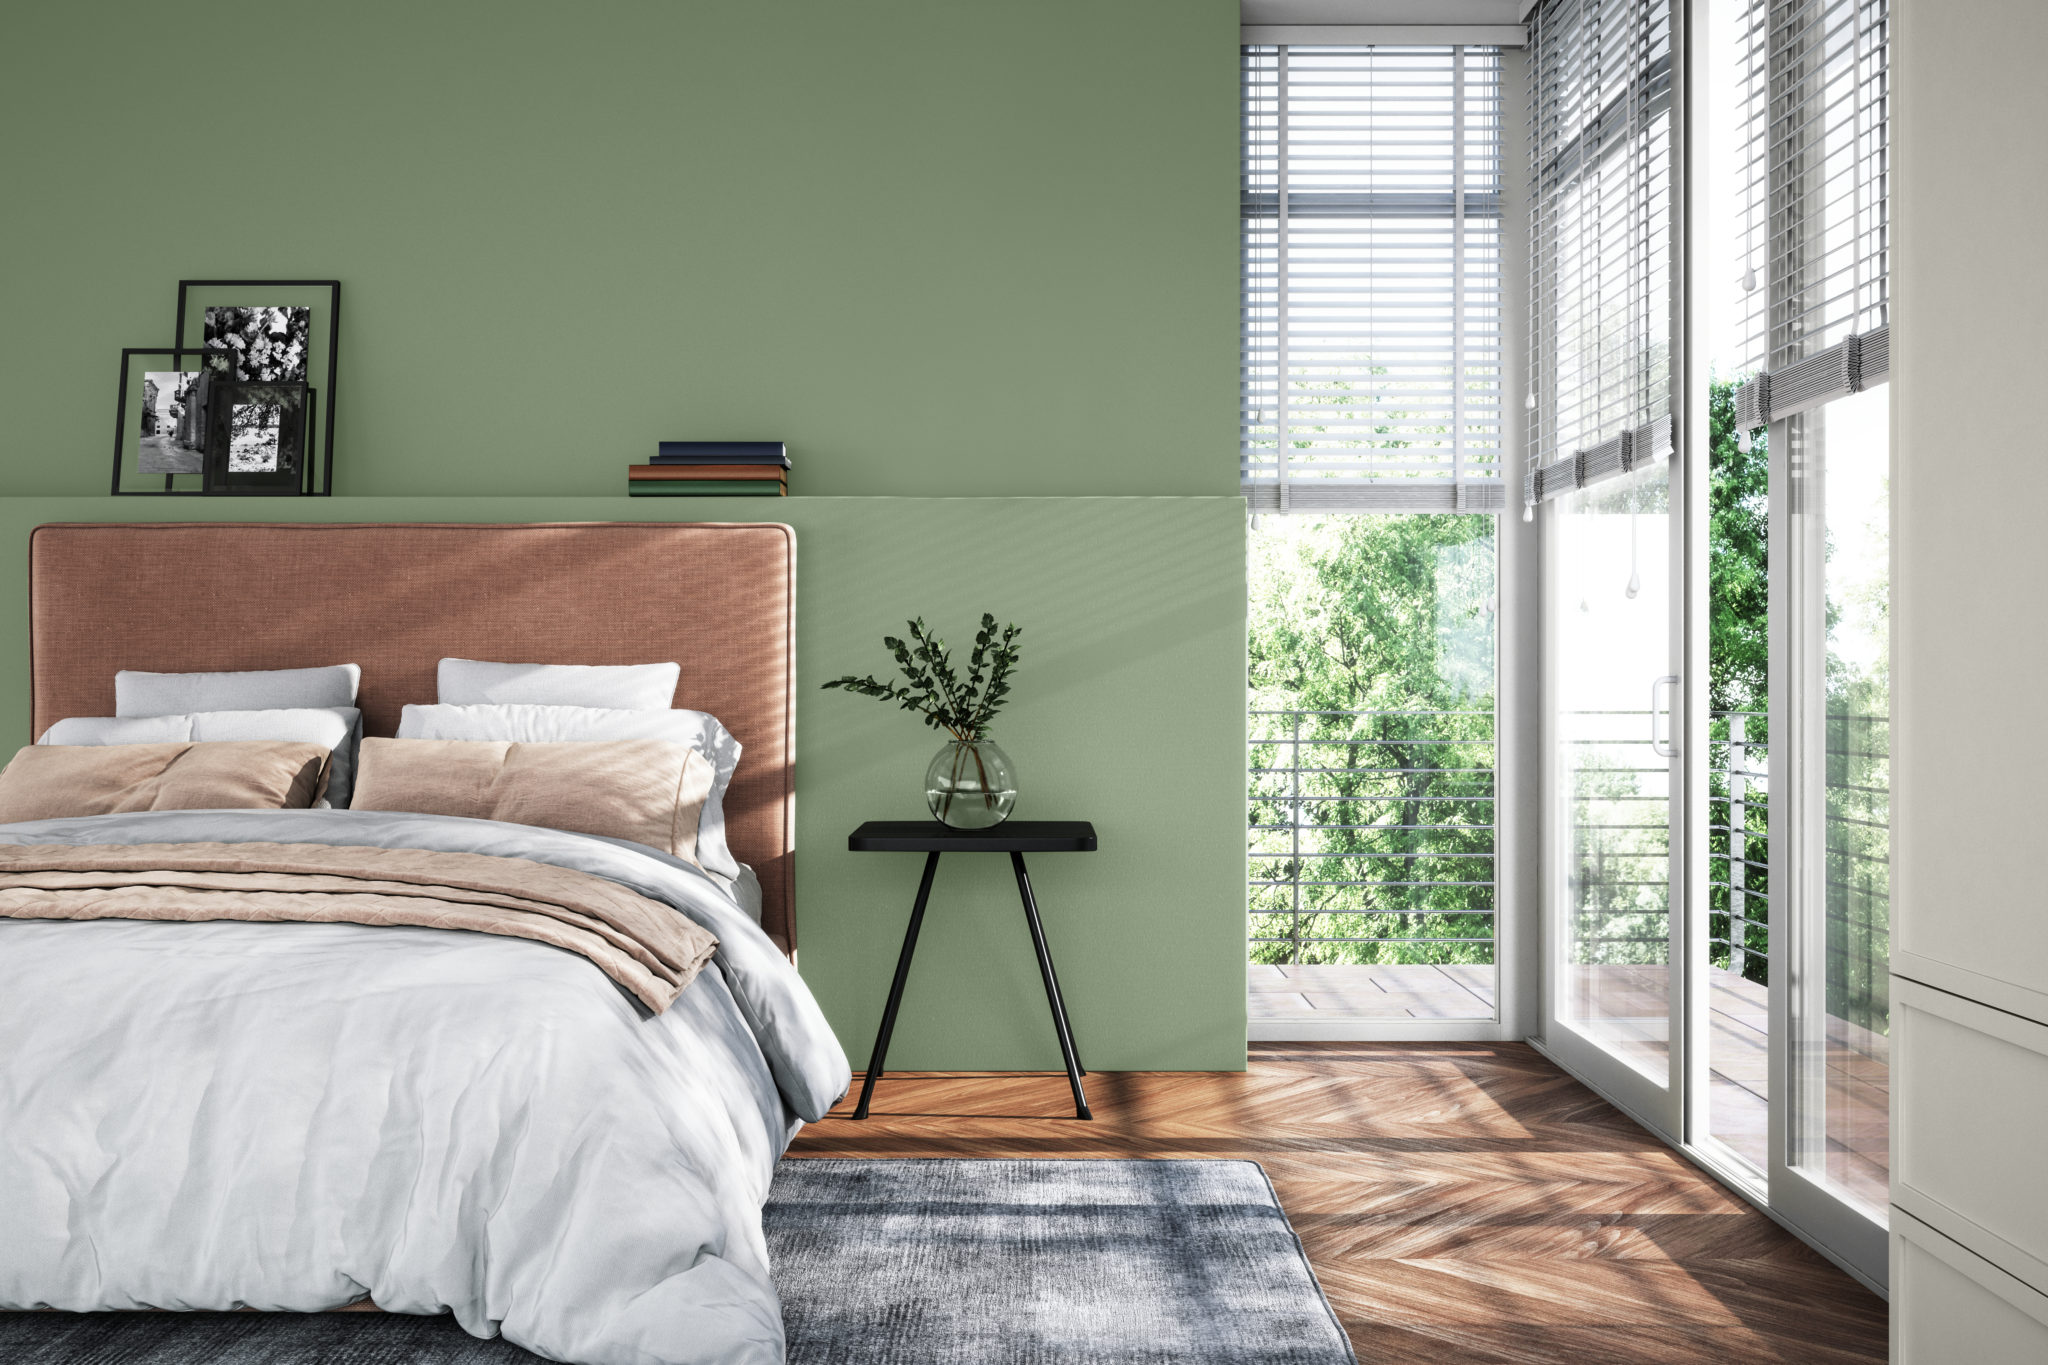 Un intérieur contemporain de chambre avec beaucoup de lumière naturelle, un lit confortable et élégant et un mur de couleur verte appelée Arbre de lauriers.